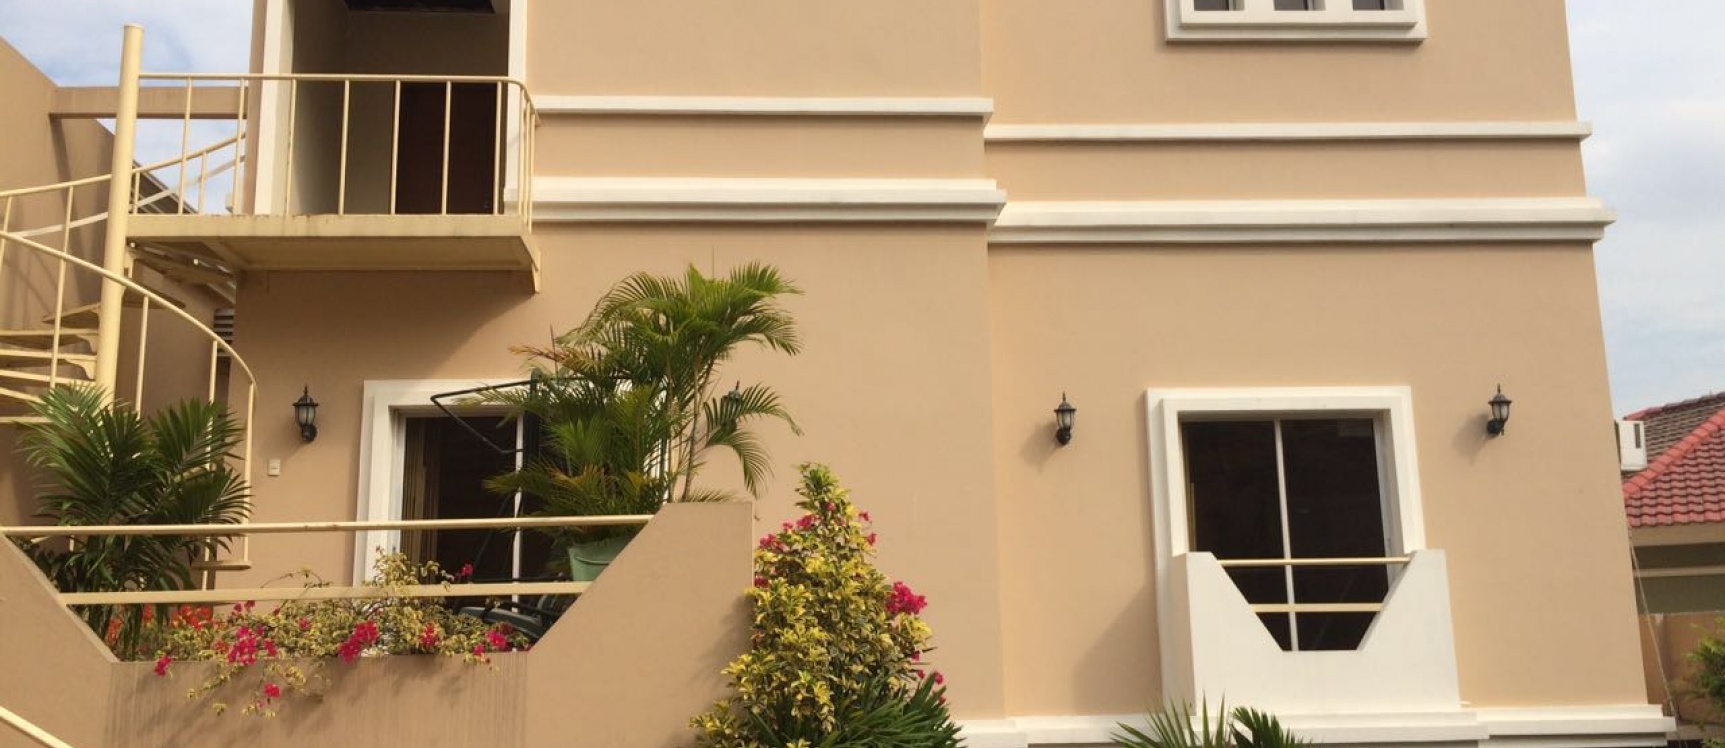 GeoBienes - Casa en Venta en Cumbre / Ceibos Guayaquil - Plusvalia Guayaquil Casas de venta y alquiler Inmobiliaria Ecuador